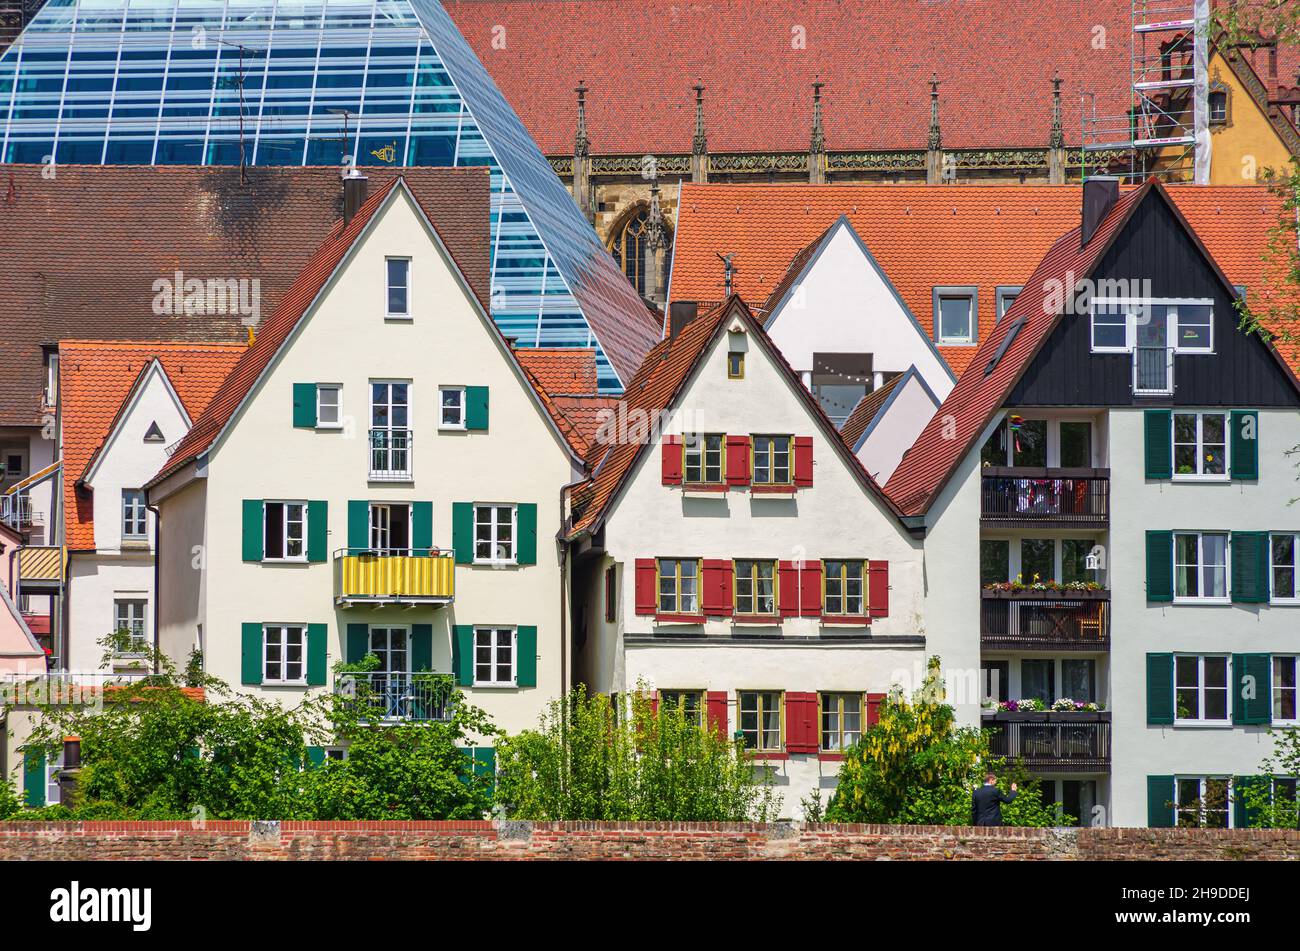 Ulm, Baden-Württemberg, Germania: Parte del famoso lungofiume del Danubio con le case storiche del quartiere dei pescatori (Fischerviertel). Foto Stock